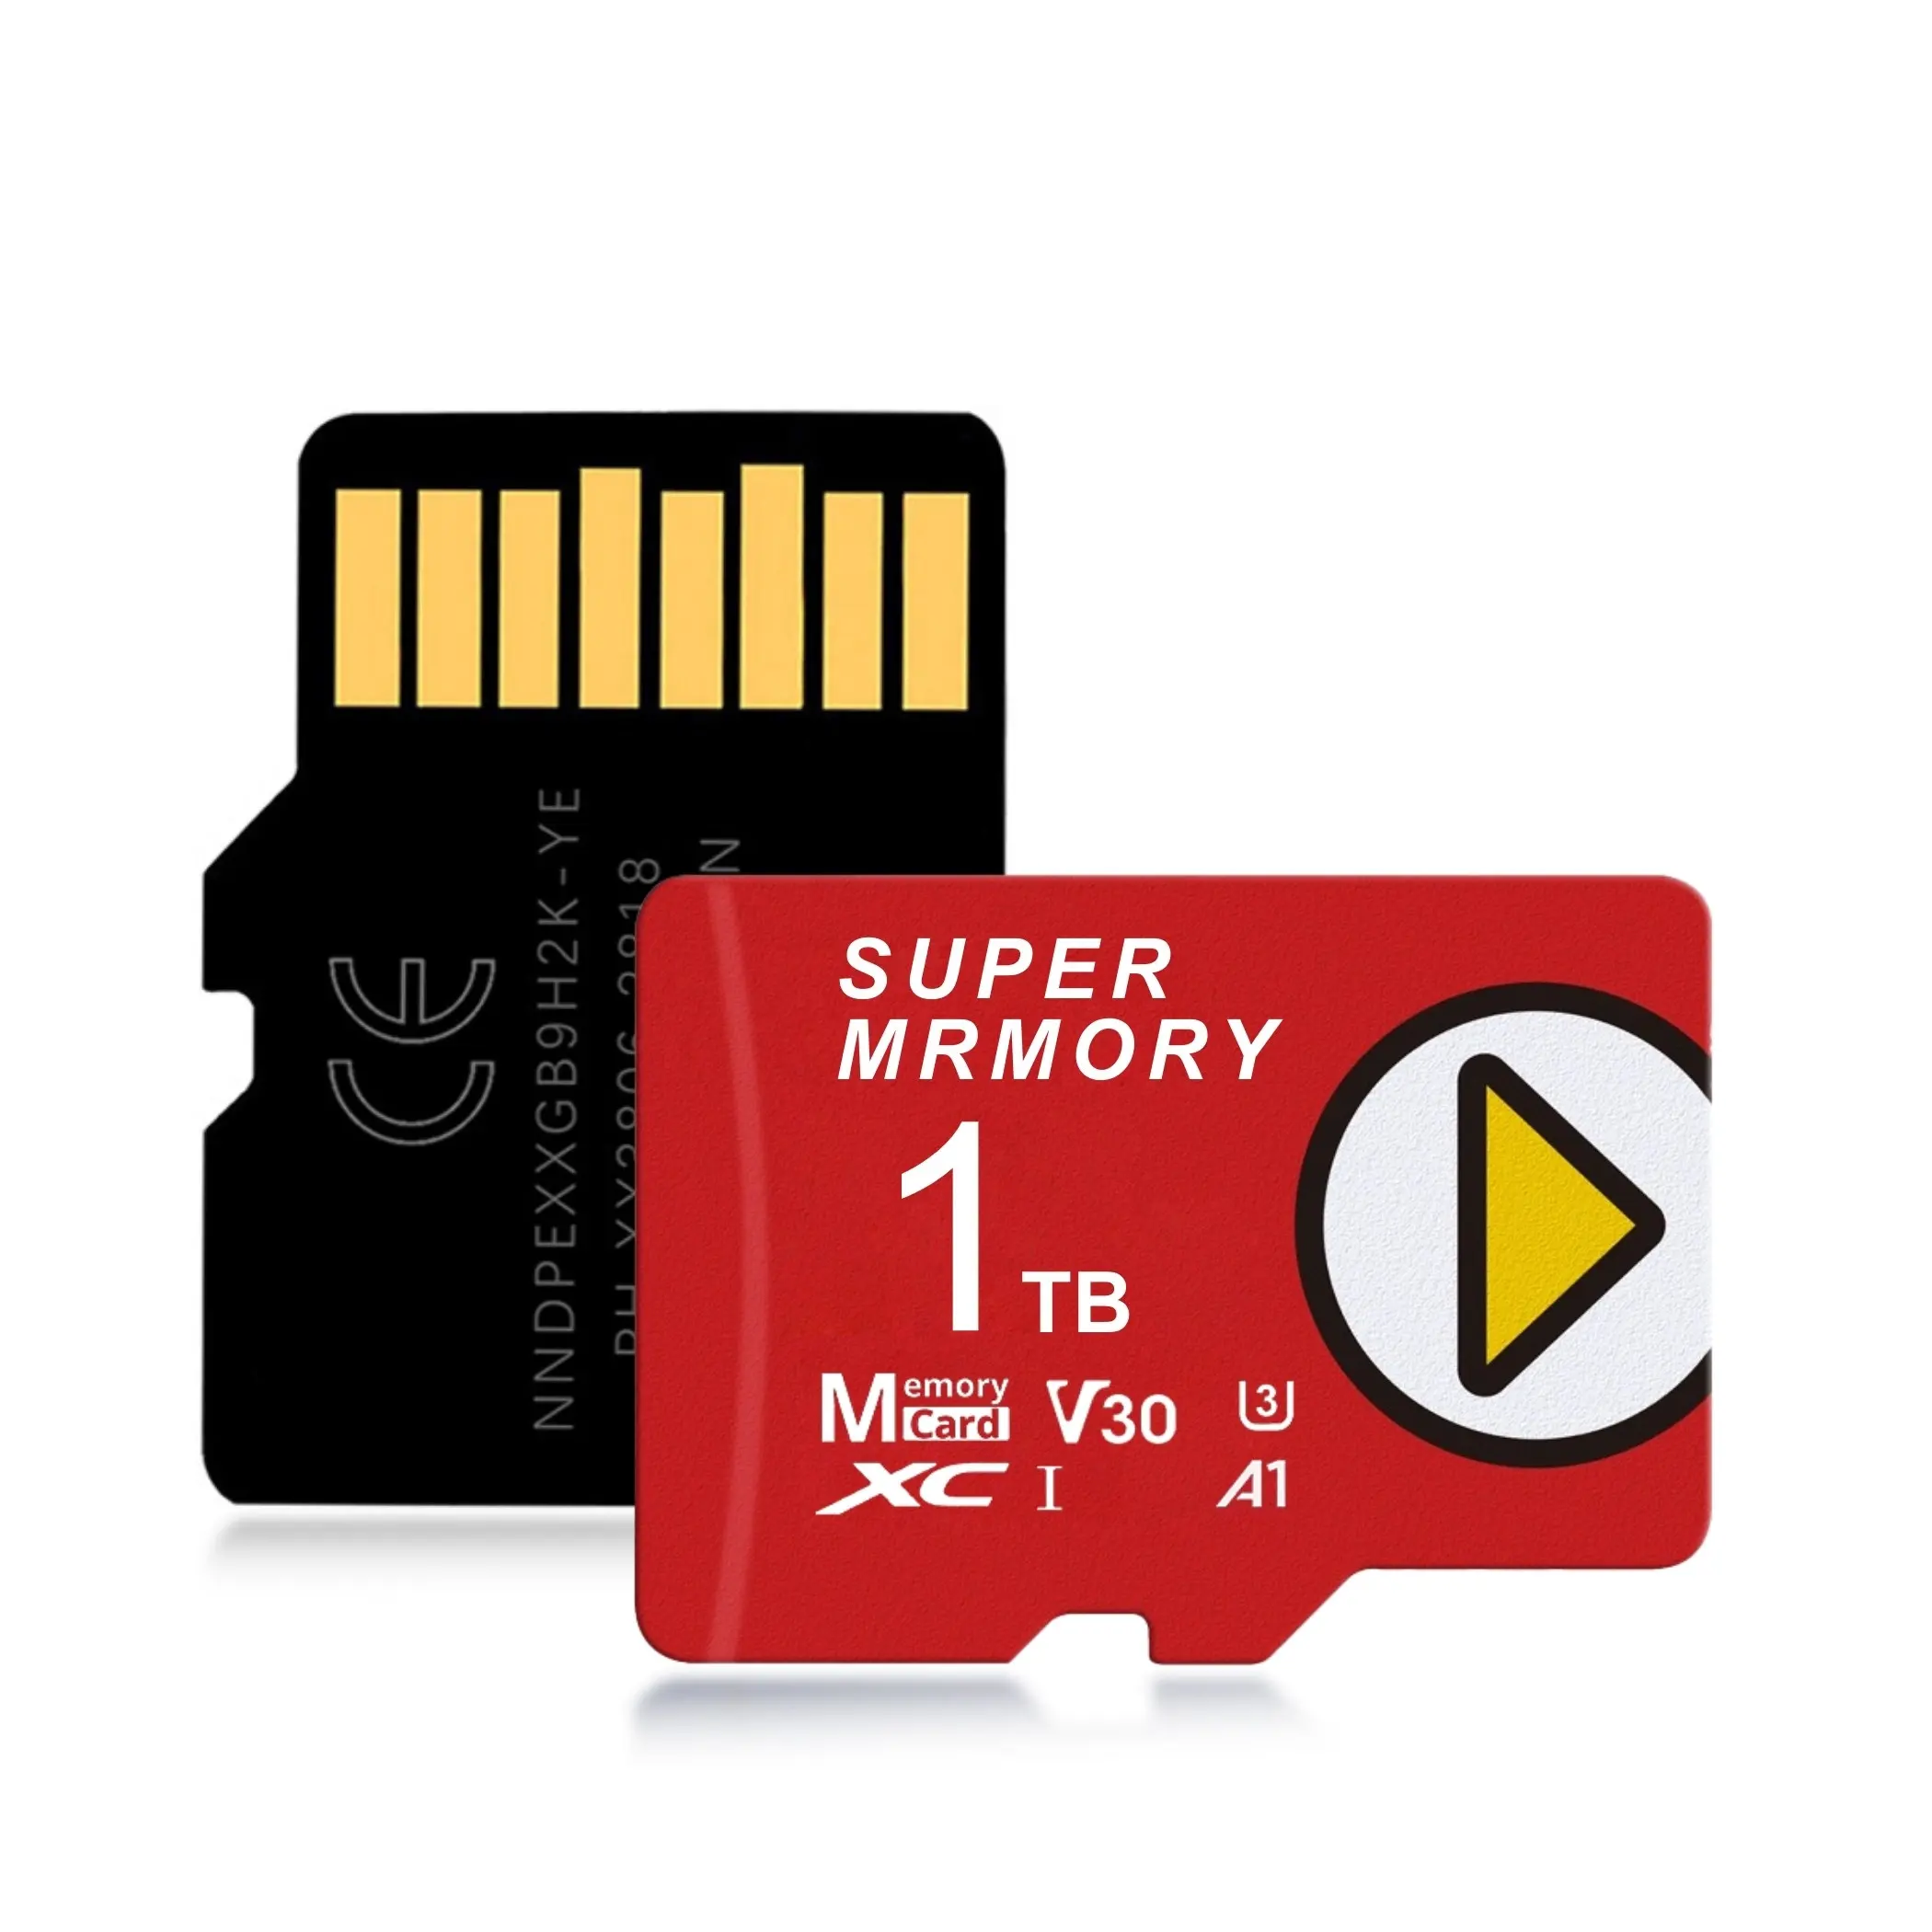 Orijinal cips gerçek kapasite 1TB mikro TF kartları tam GB bellek SD kart oyun küp oyun konsolları için